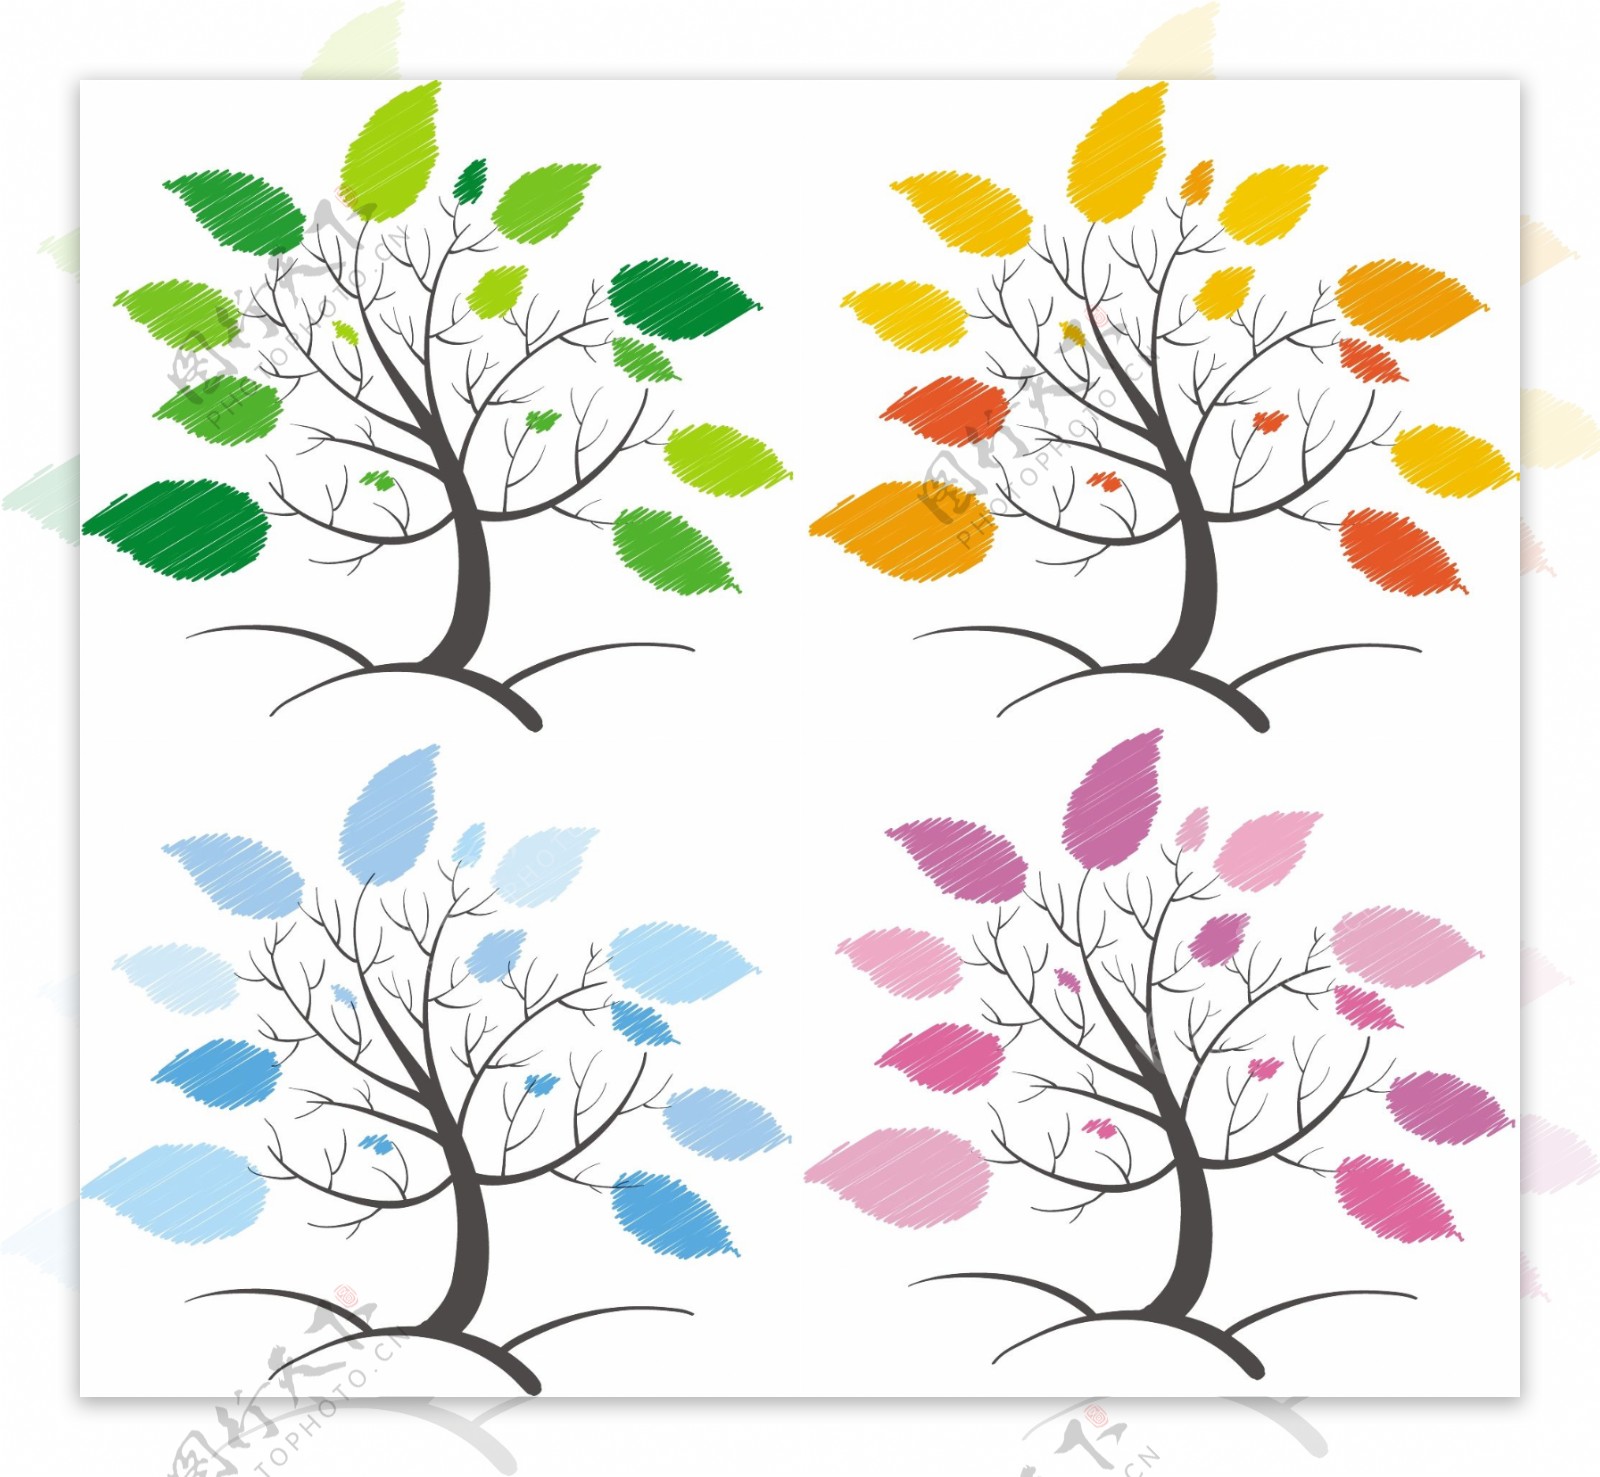 四棵不同颜色的抽象大树矢量素材